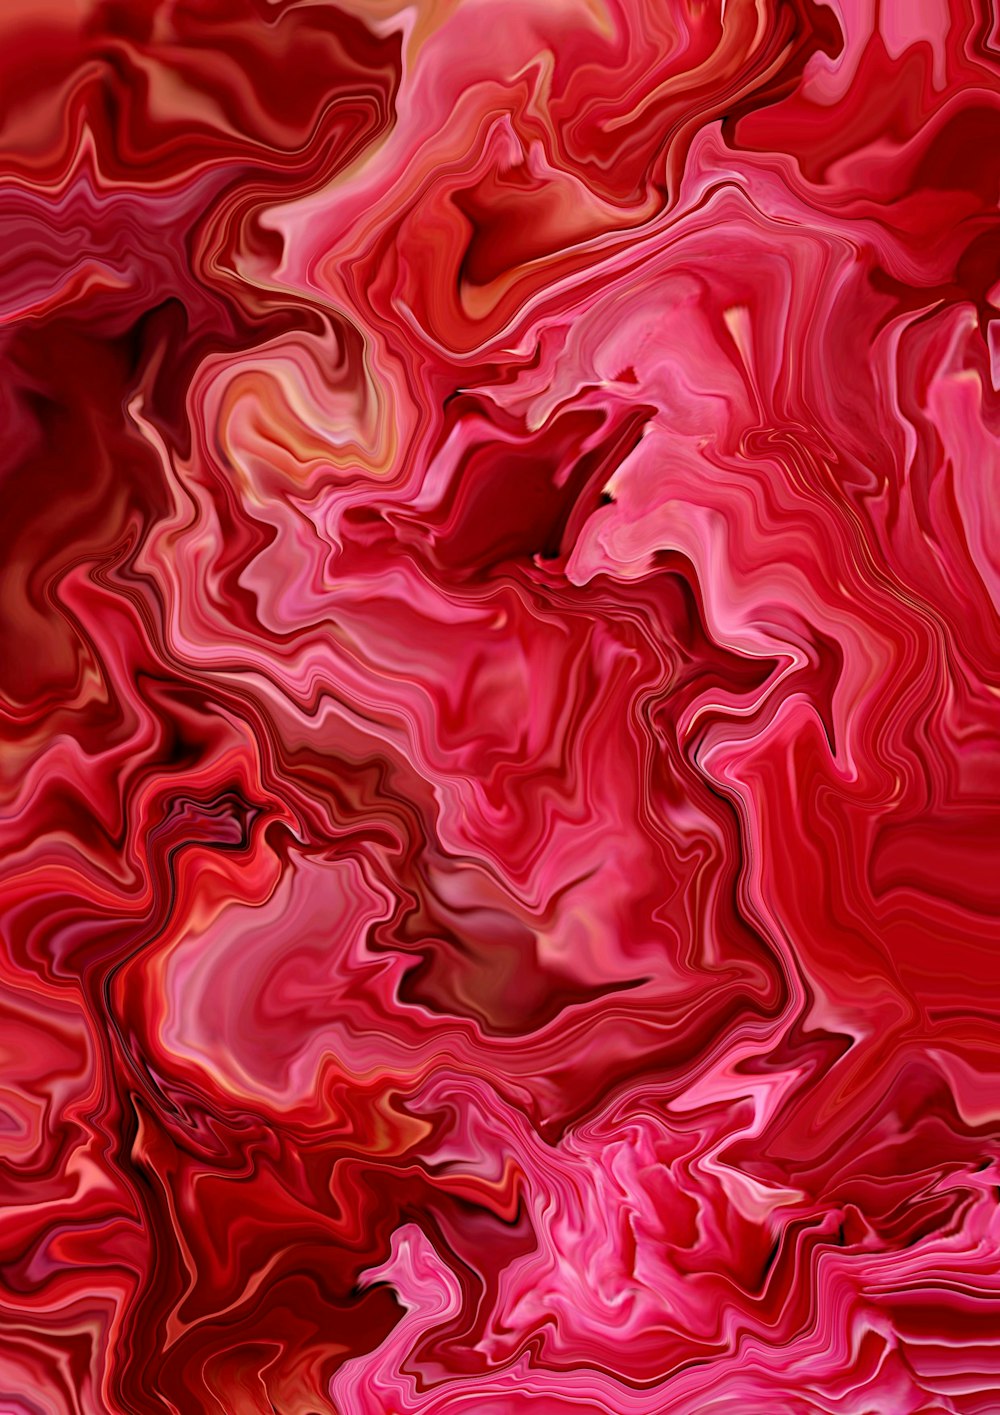 Un dipinto astratto rosso e rosa con uno sfondo nero